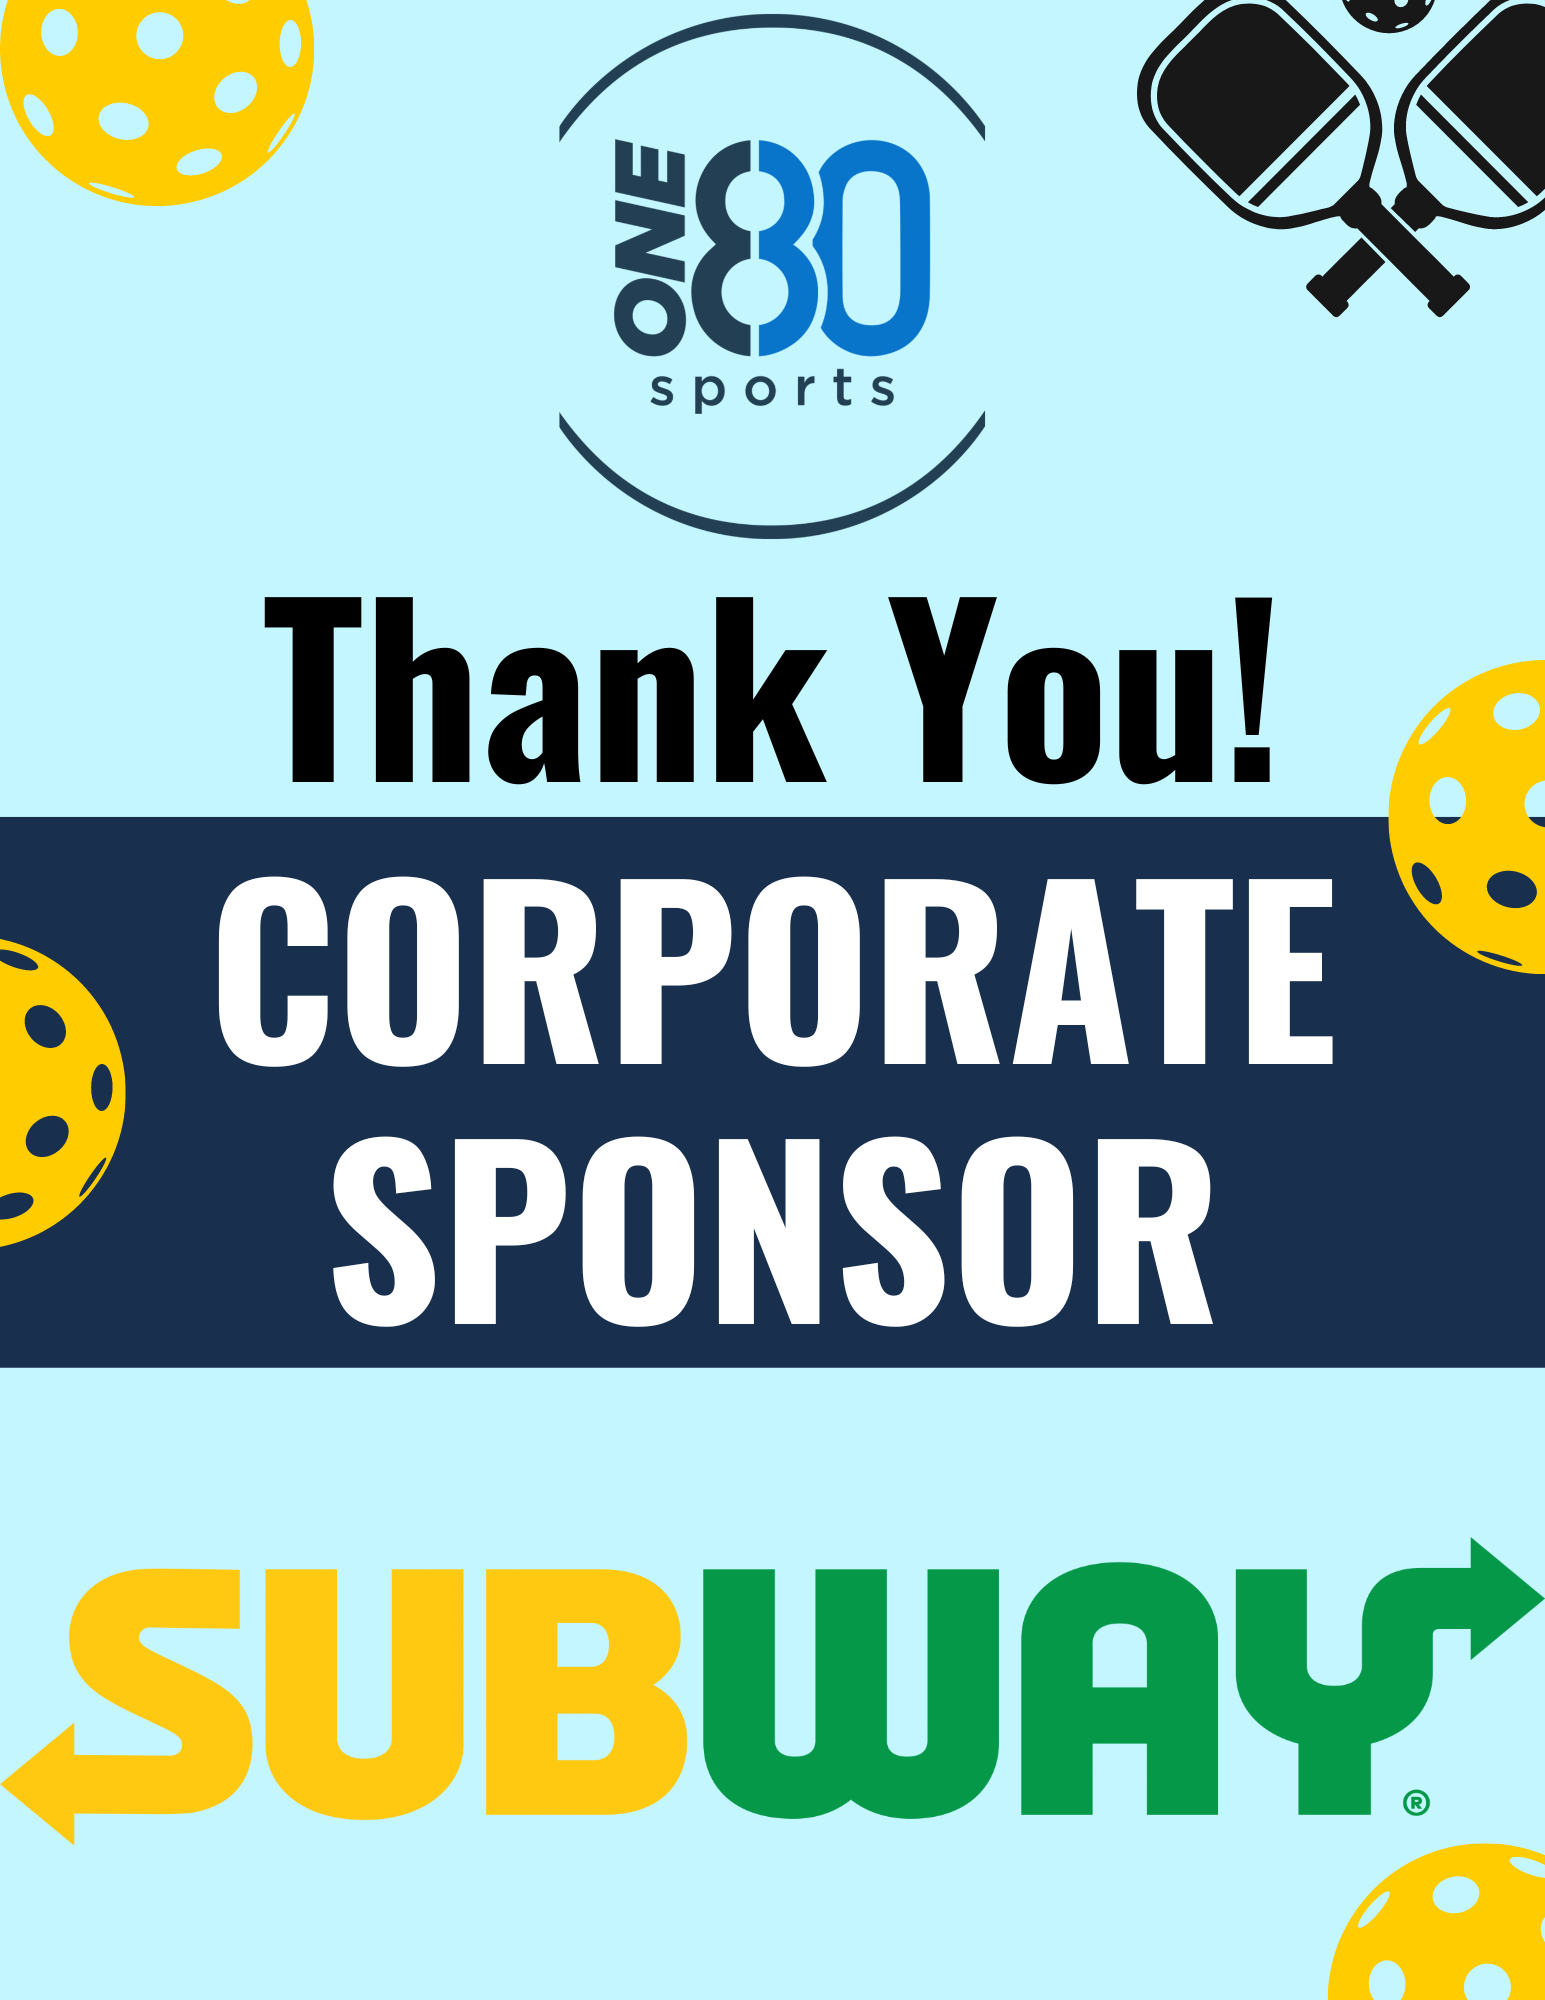 Subway - corporate sponsor.png